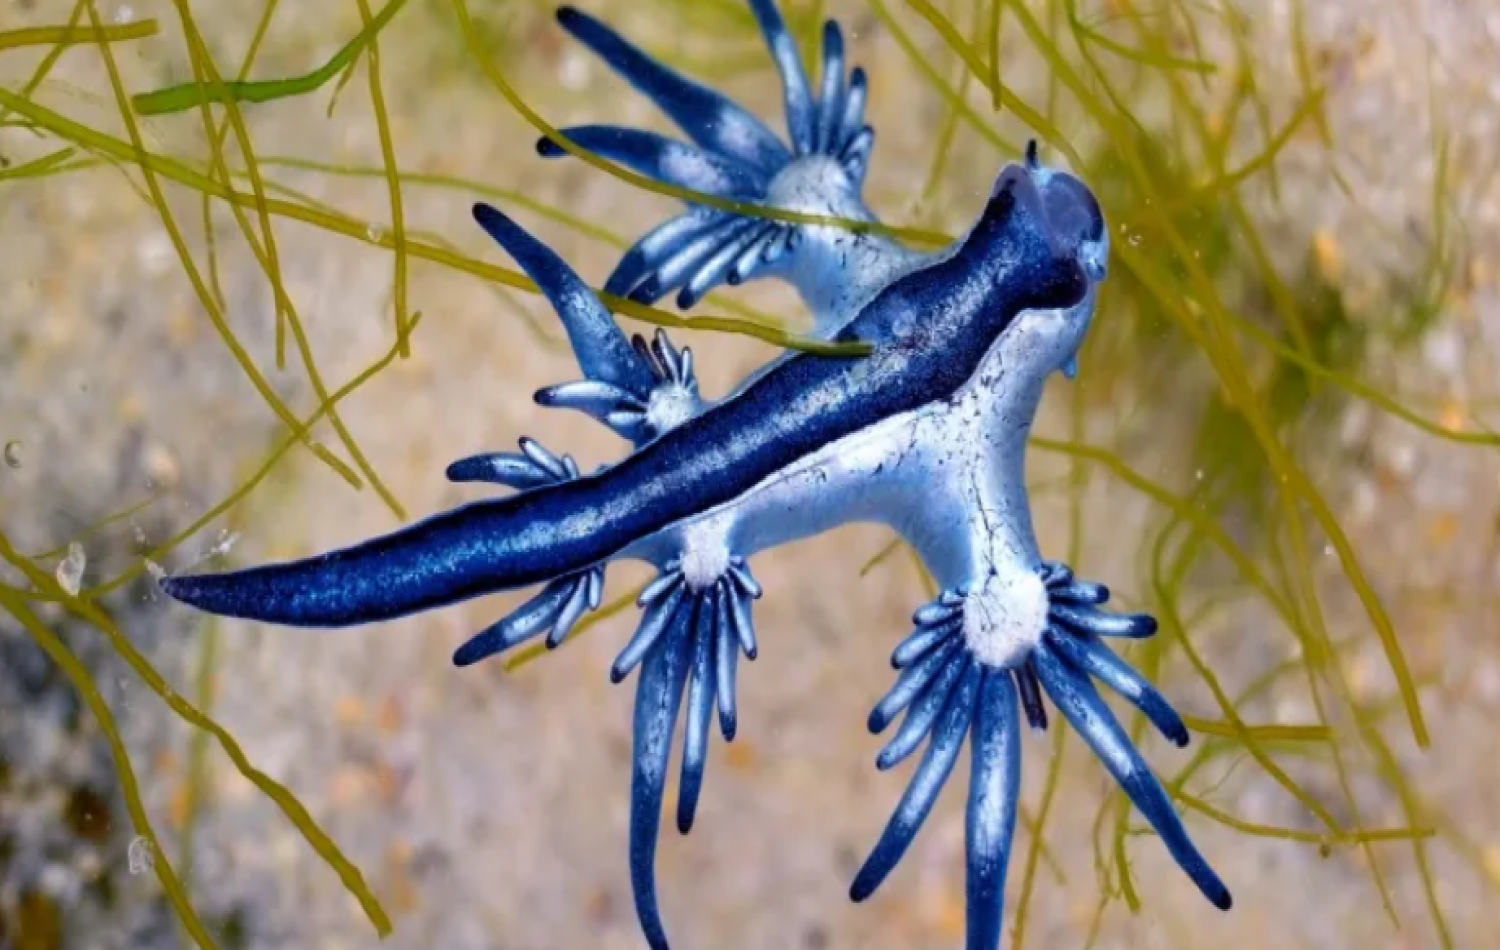 Casal de férias encontra “dragão azul” venenoso no Golfo do México